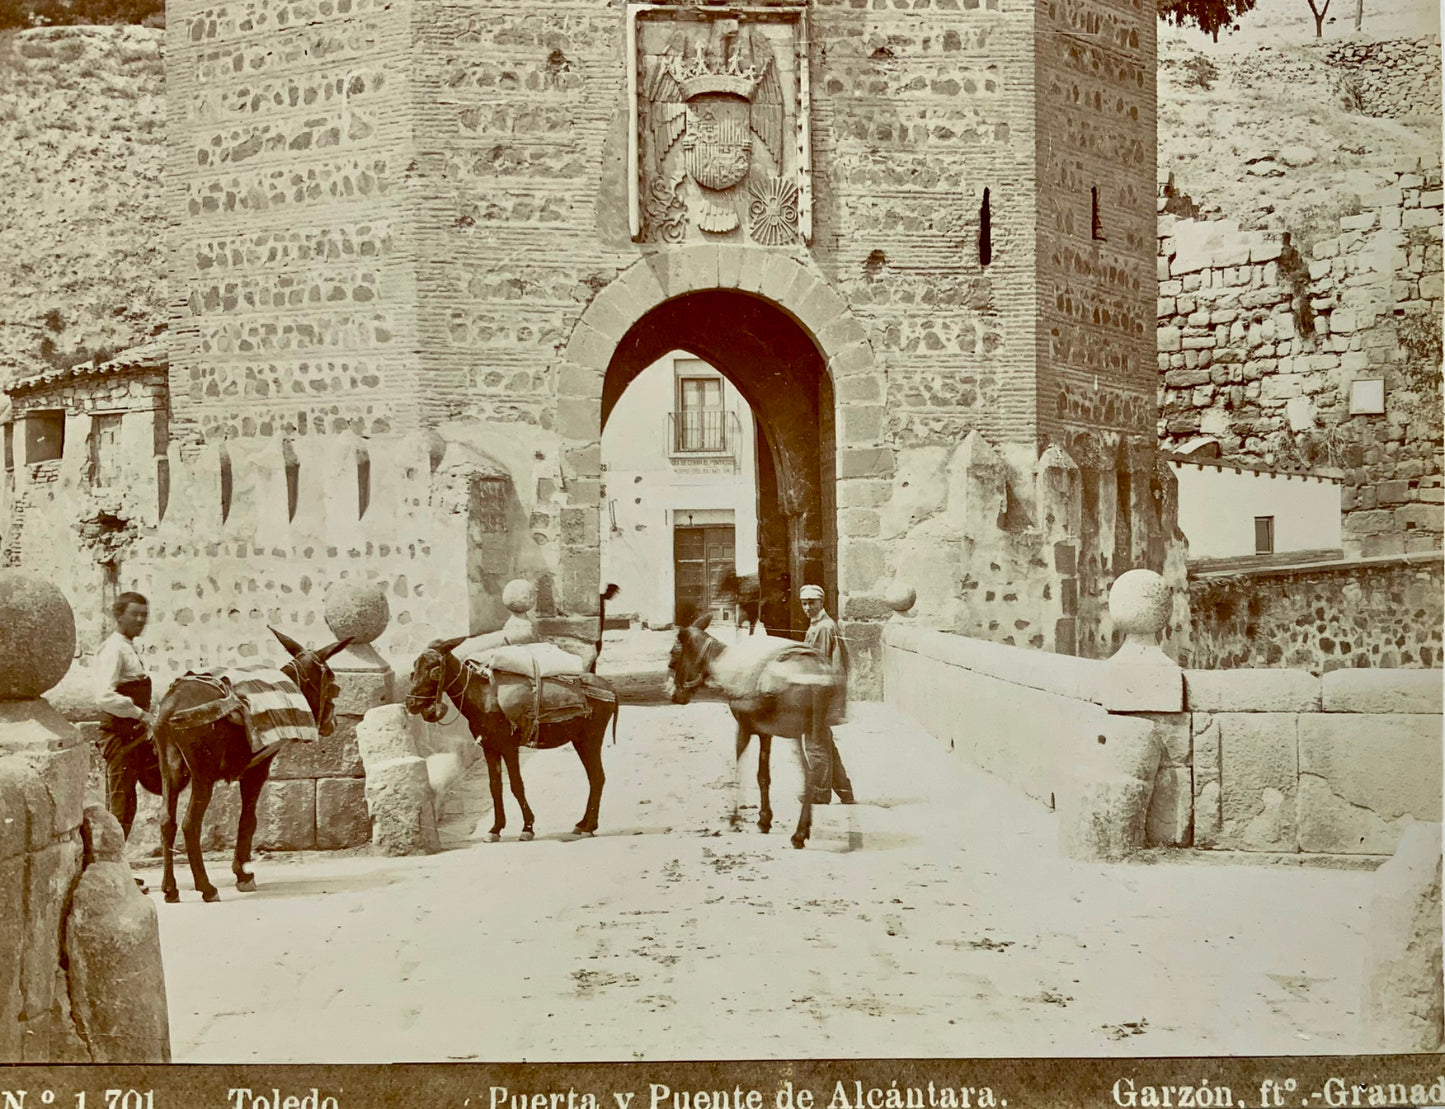 1880s Rafael Garzón, Spain, Toledo, Puerta Alcantara, albumen print